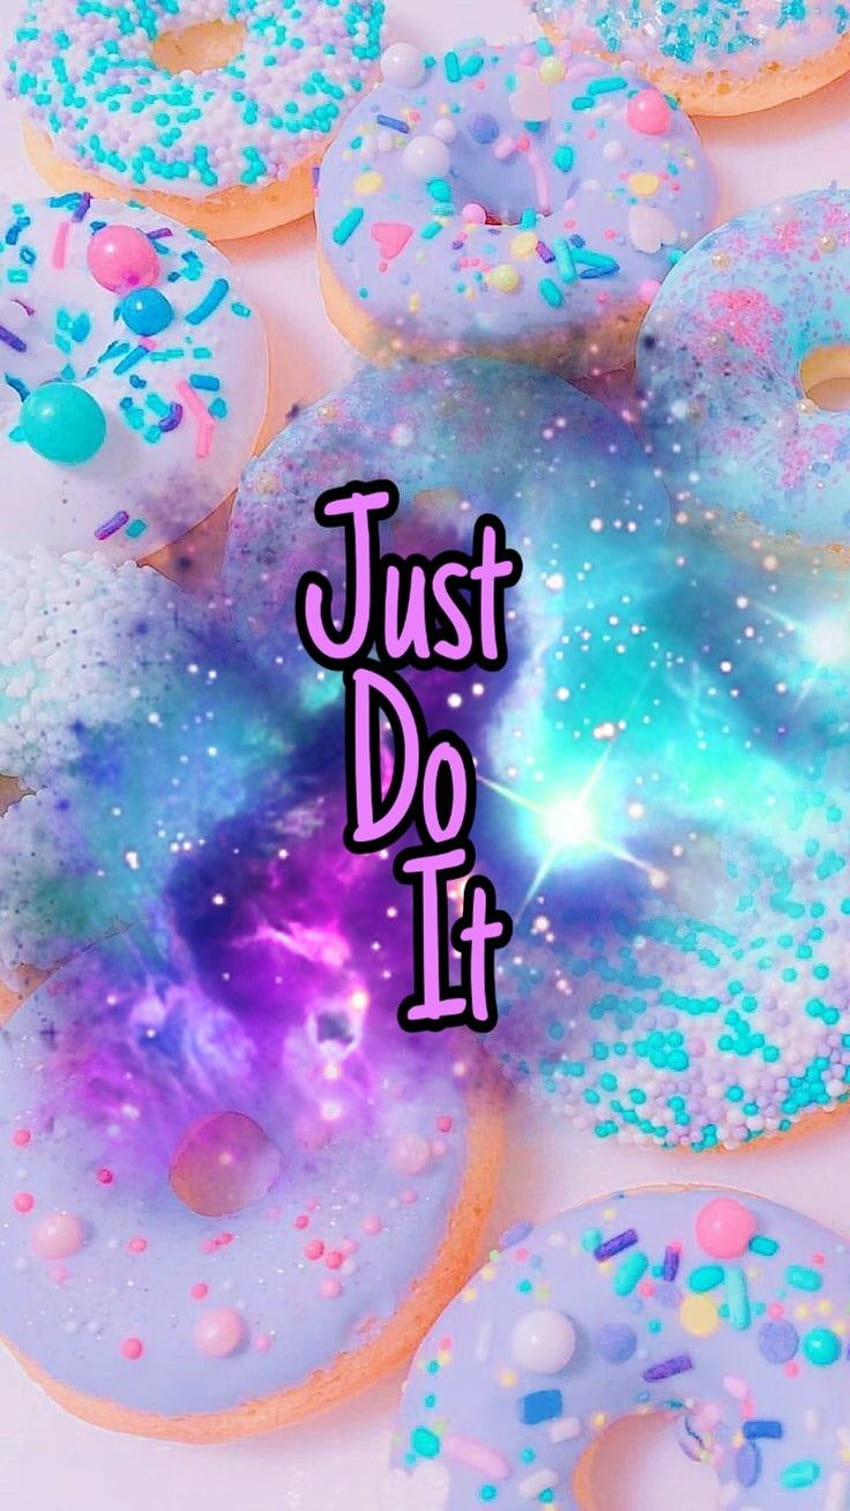 Just Do It, galaxy donuts HD phone wallpaper